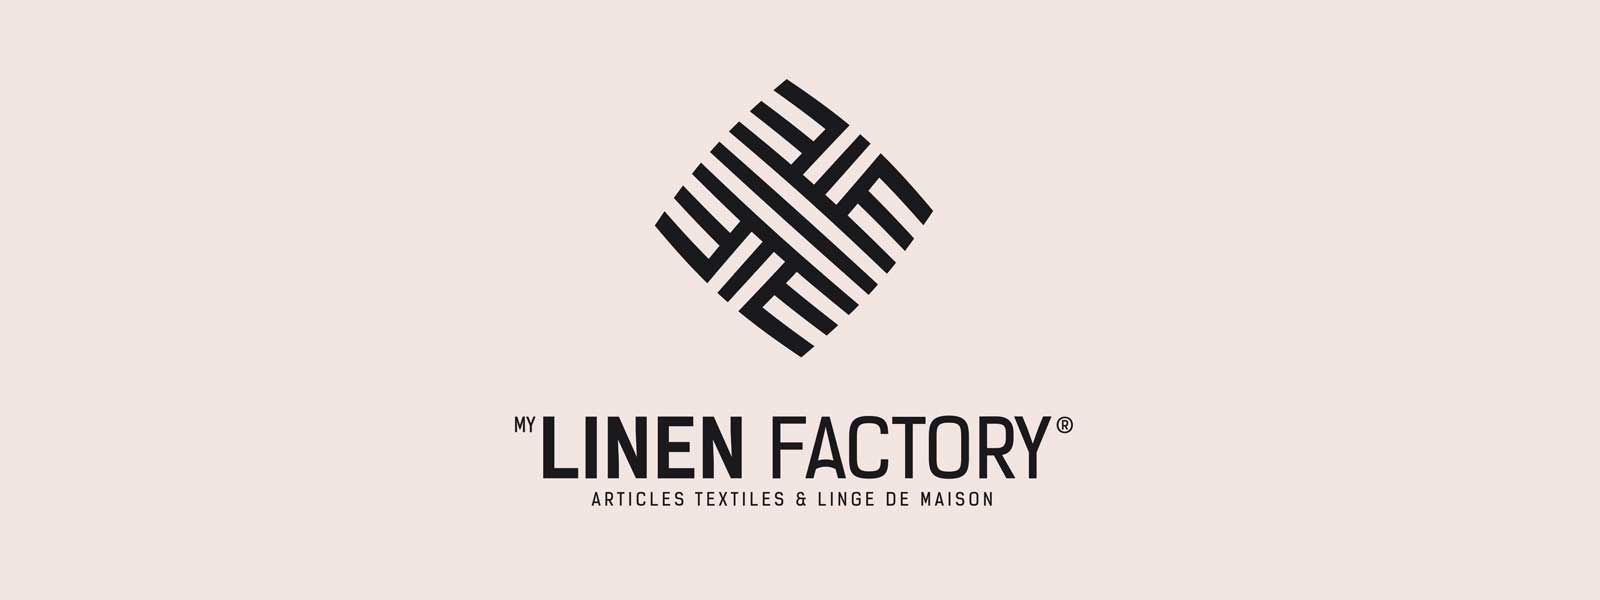 logo linen